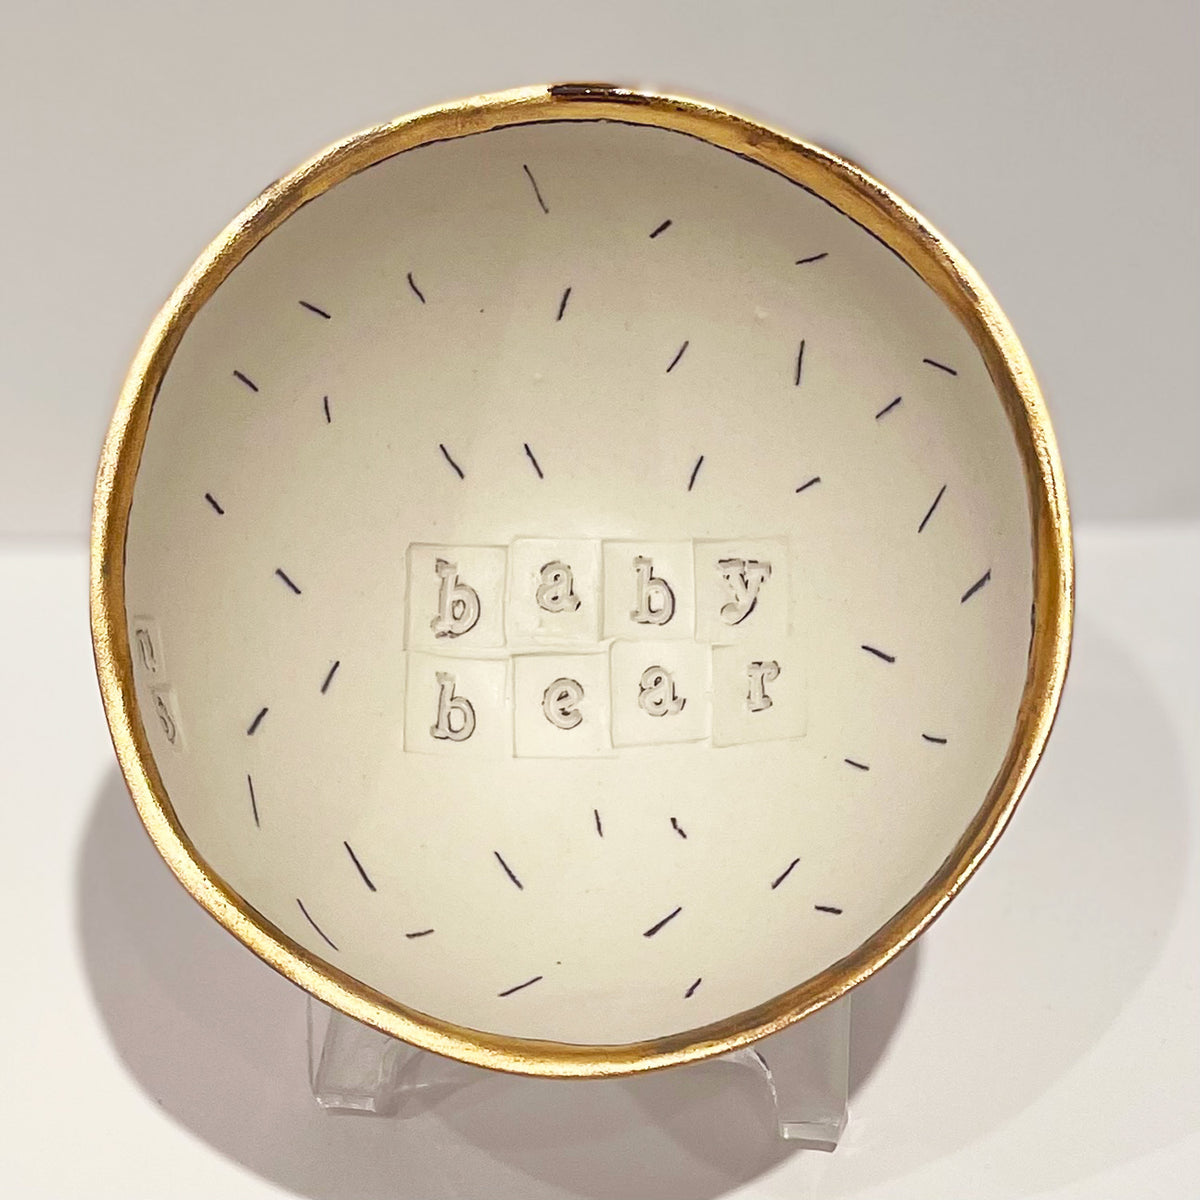 Marla Buck - Baby Bear Baby Bowl, 4,5" x 4.5" x 2"